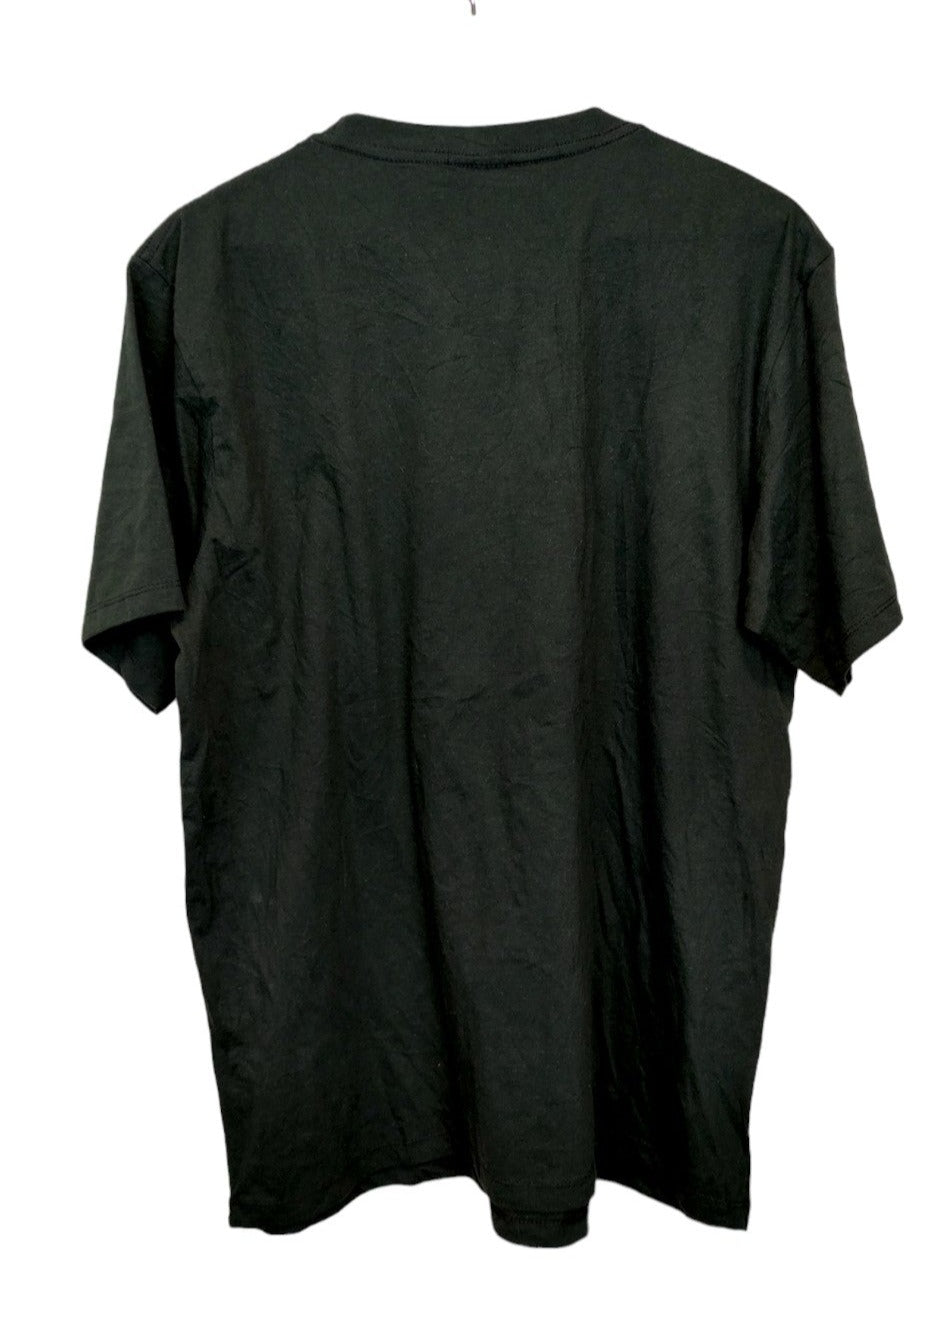 Ανδρική Μπλούζα - T- Shirt ANATOMIE σε Κυπαρισσί χρώμα (Large)